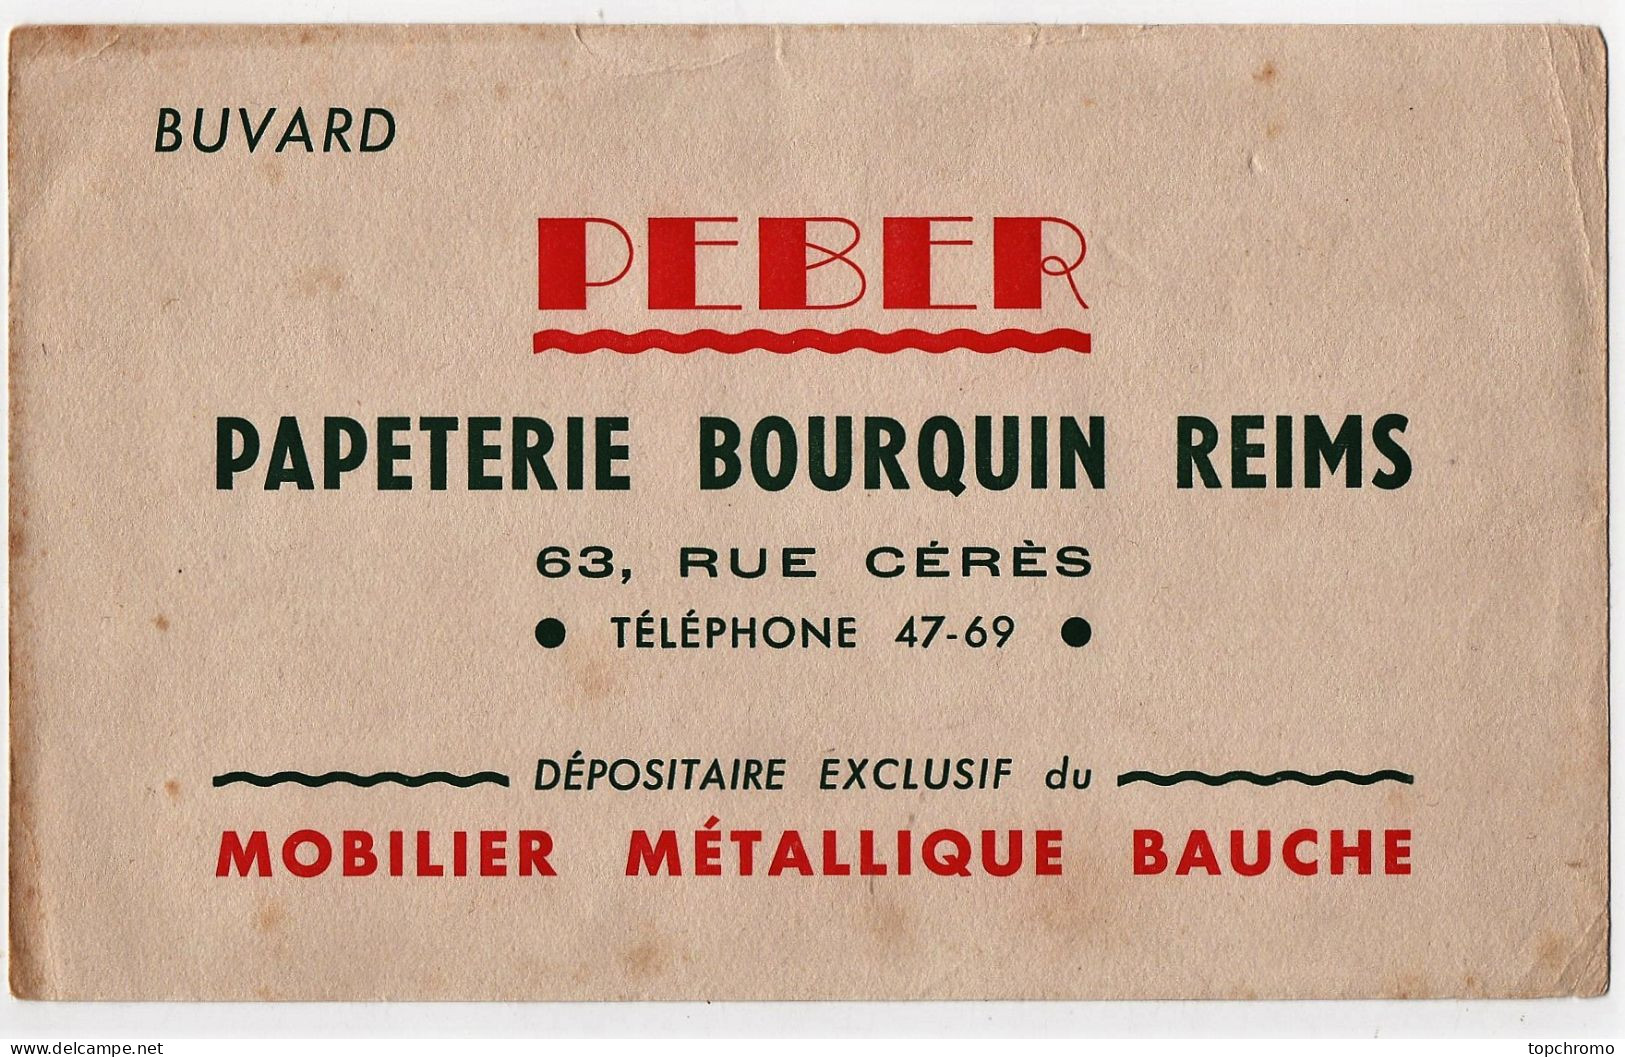 Buvard Peber Papeterie Bourquin Mobilier Métallique Bauché Rue Cérès Reims - Papeterie